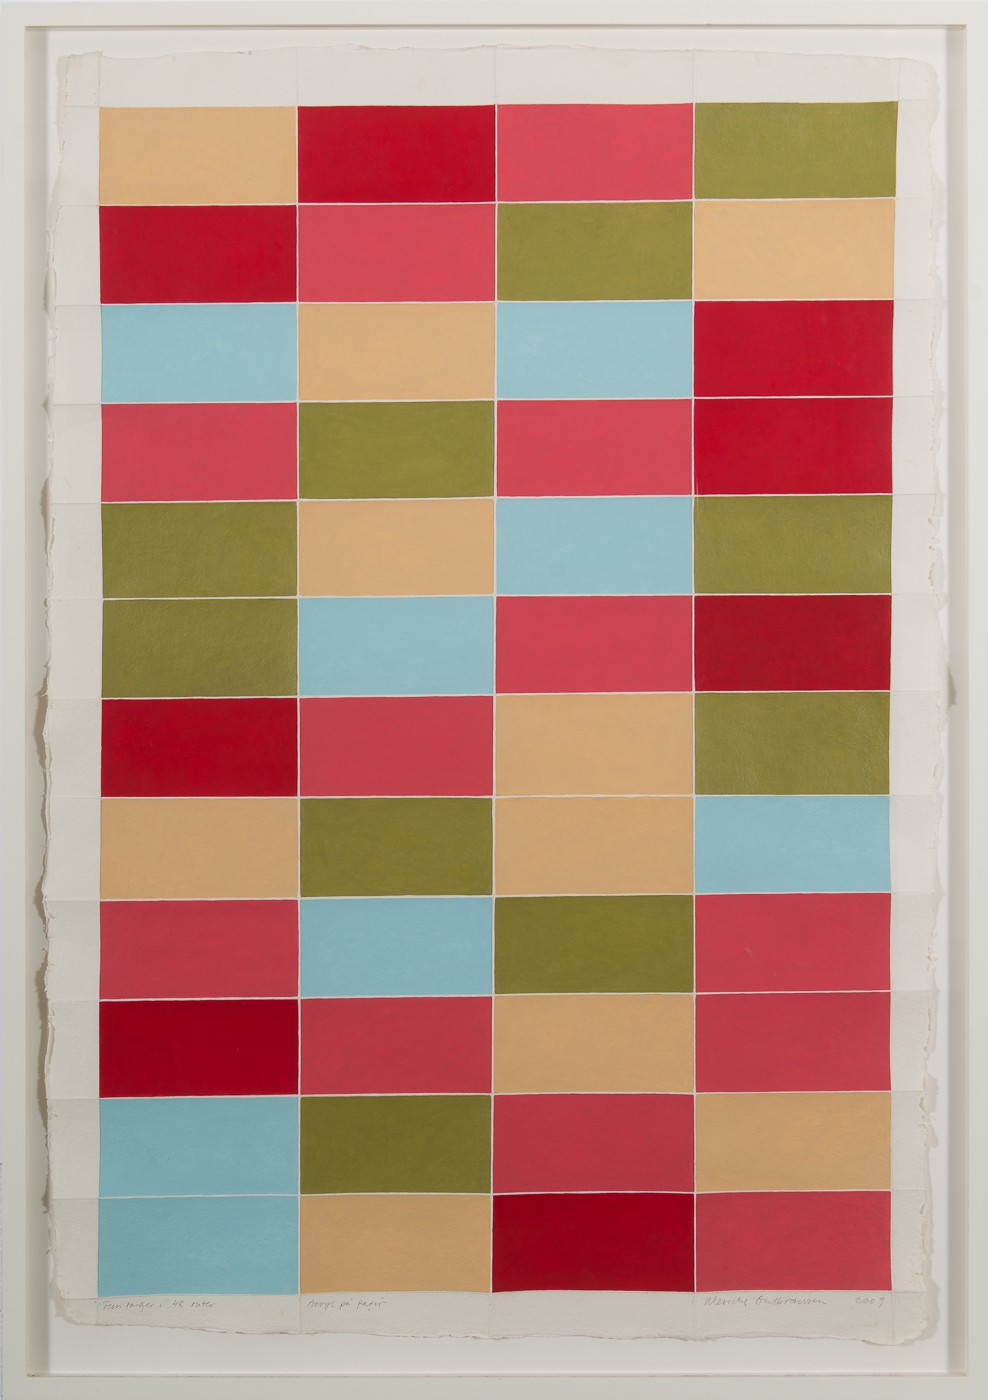 Fire farger i 48 ruter (2015) — Wenche Gulbransen